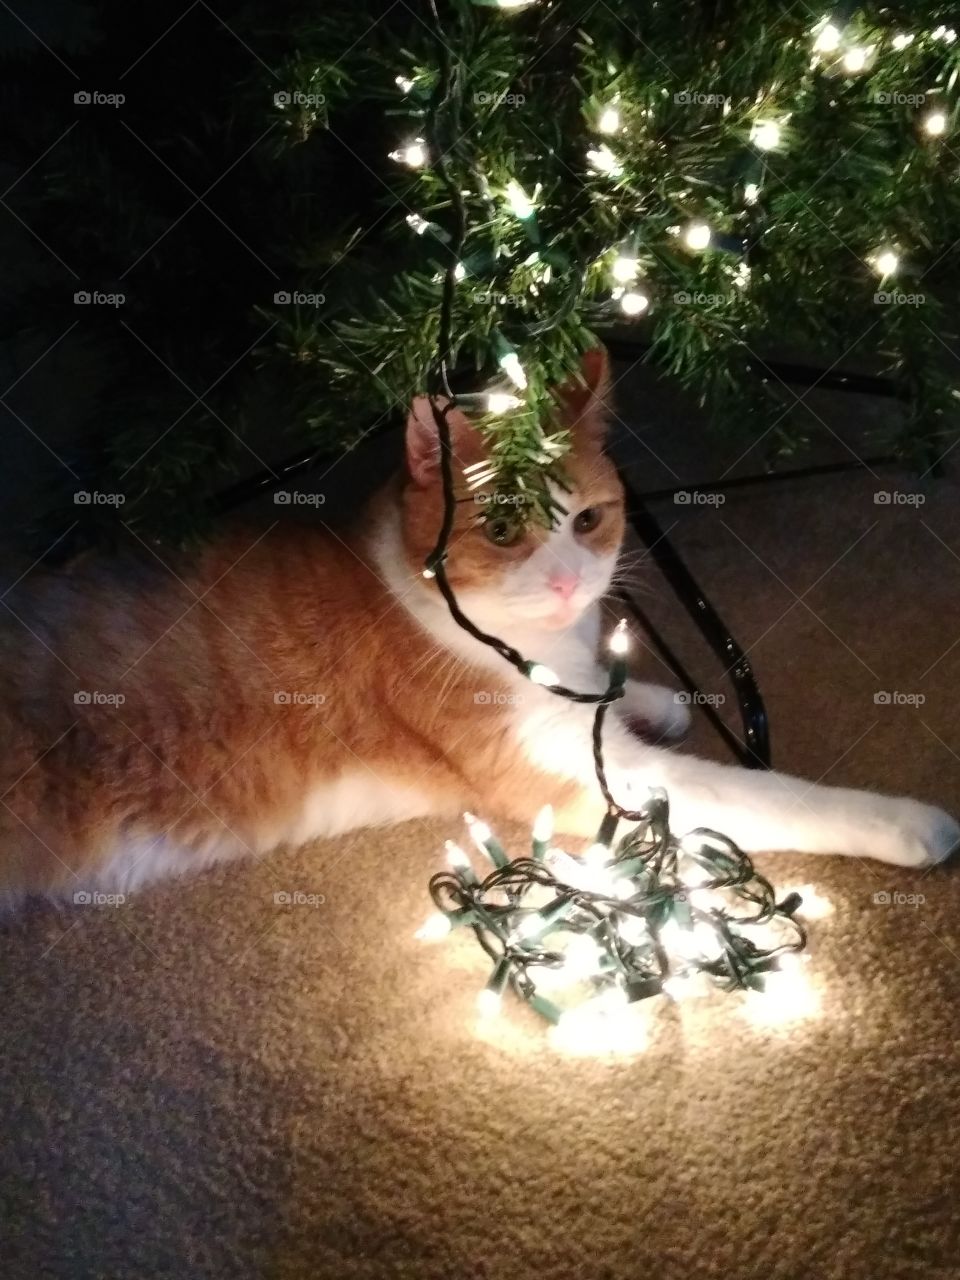 My cat Sam loves Christmas Trees.